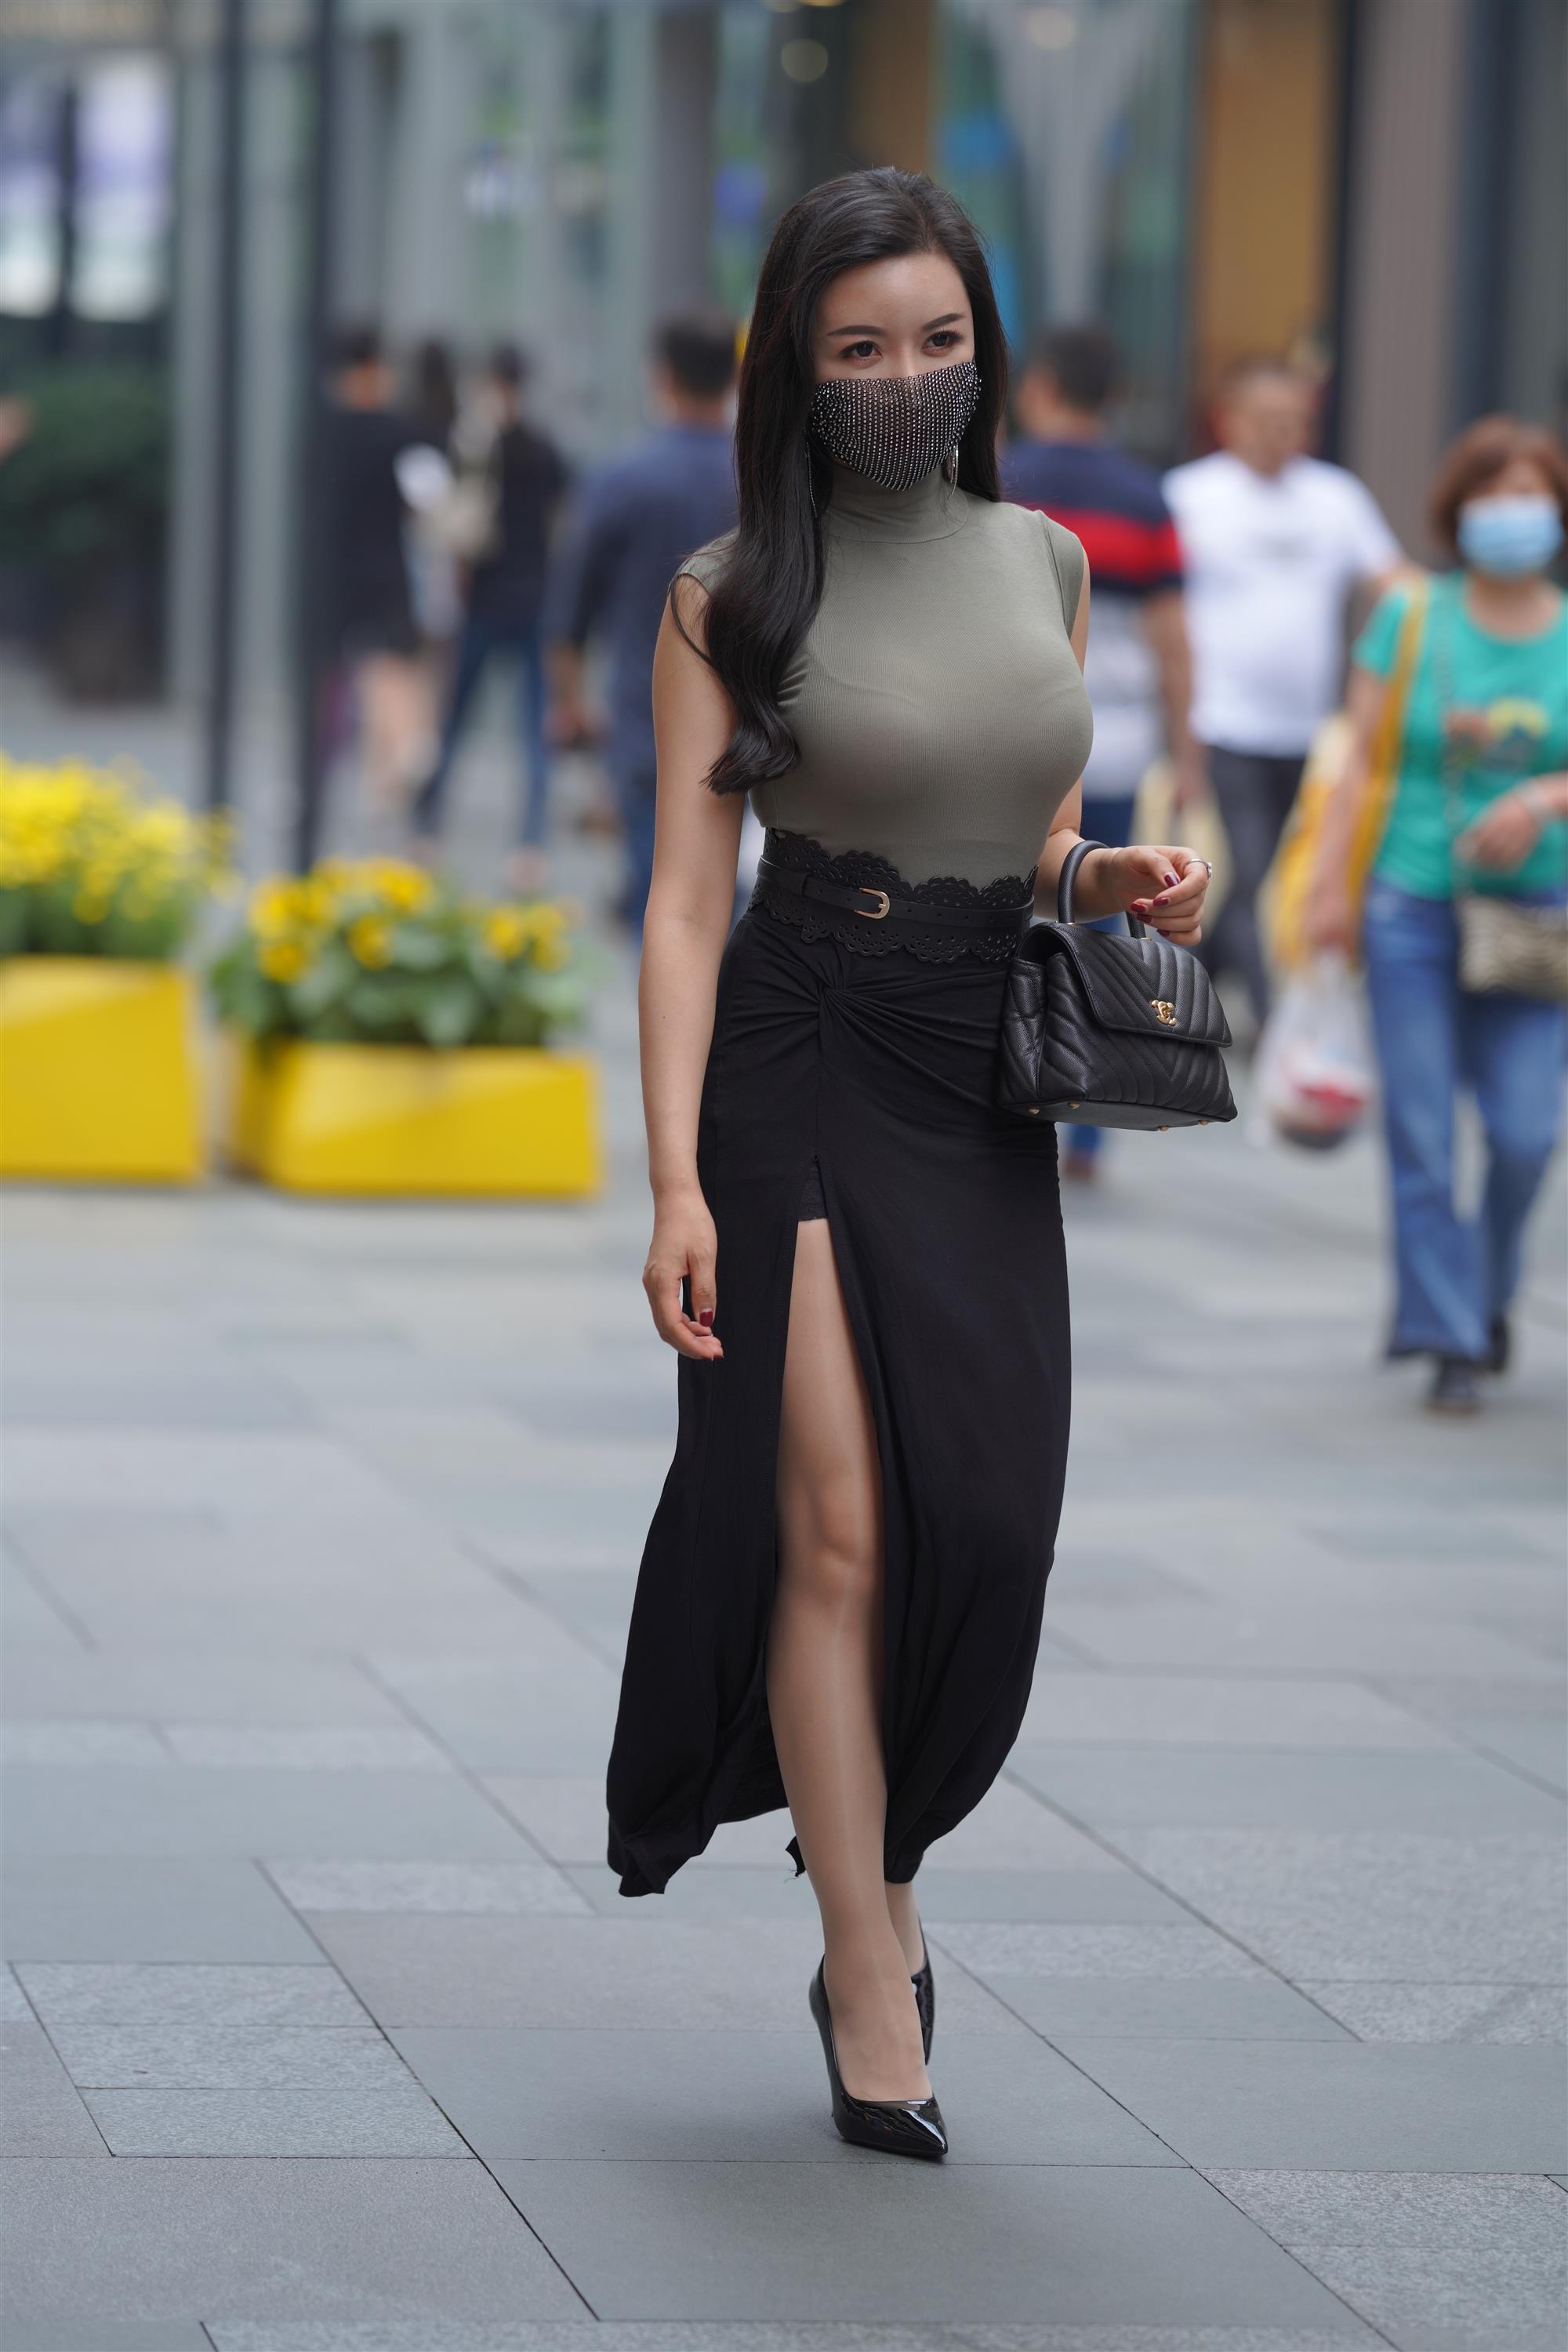 Street 欣儿 Long black skirt - 31.jpg